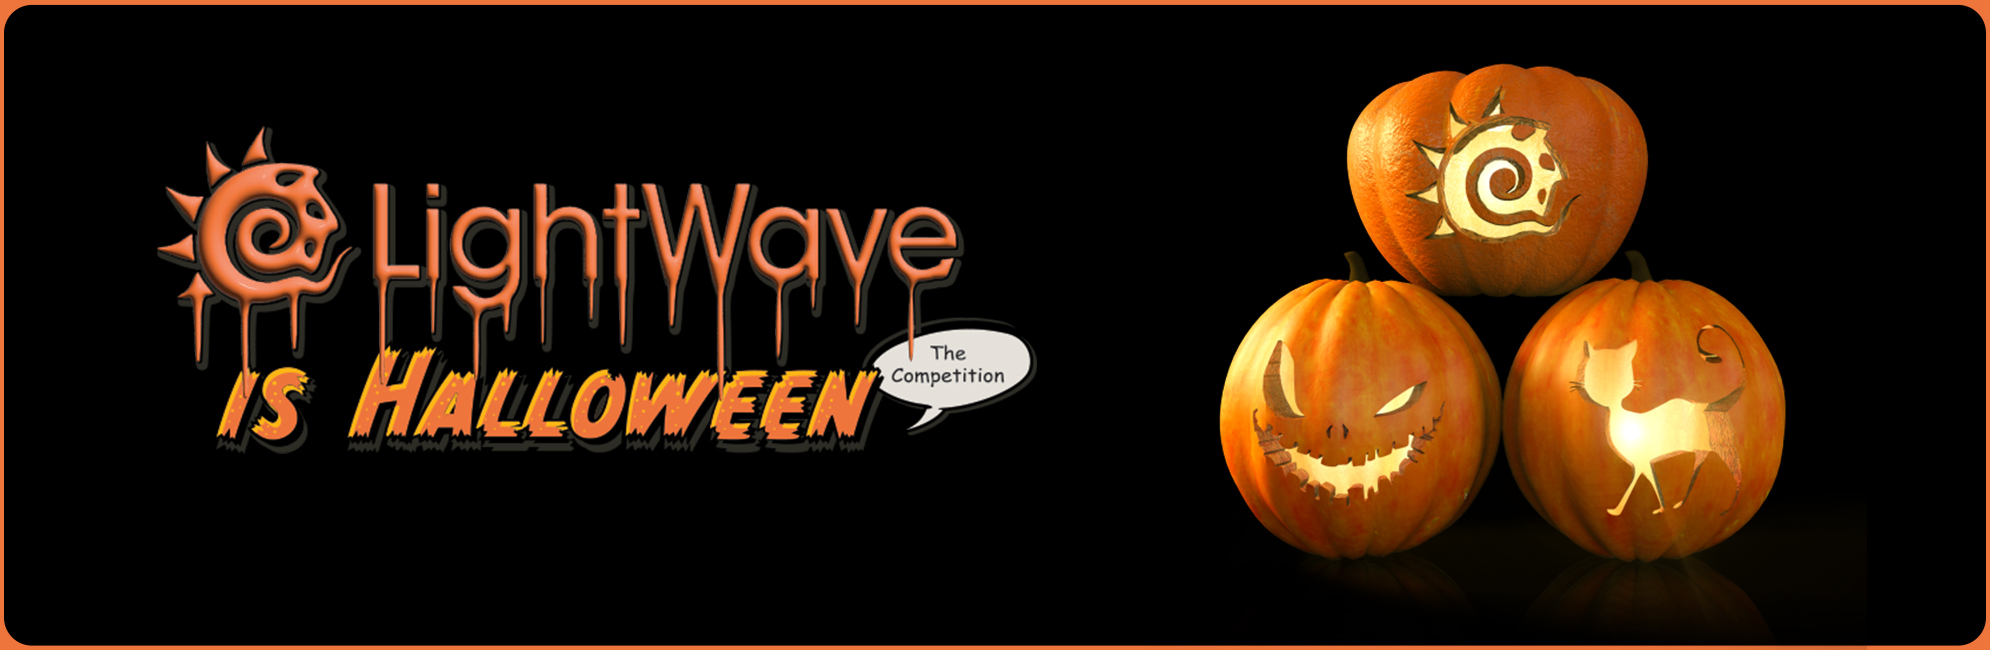 Nome: LightWave is Halloween  LightWave 3D Promo 20320918.jpg
Visite: 143
Dimensione: 387.4 KB